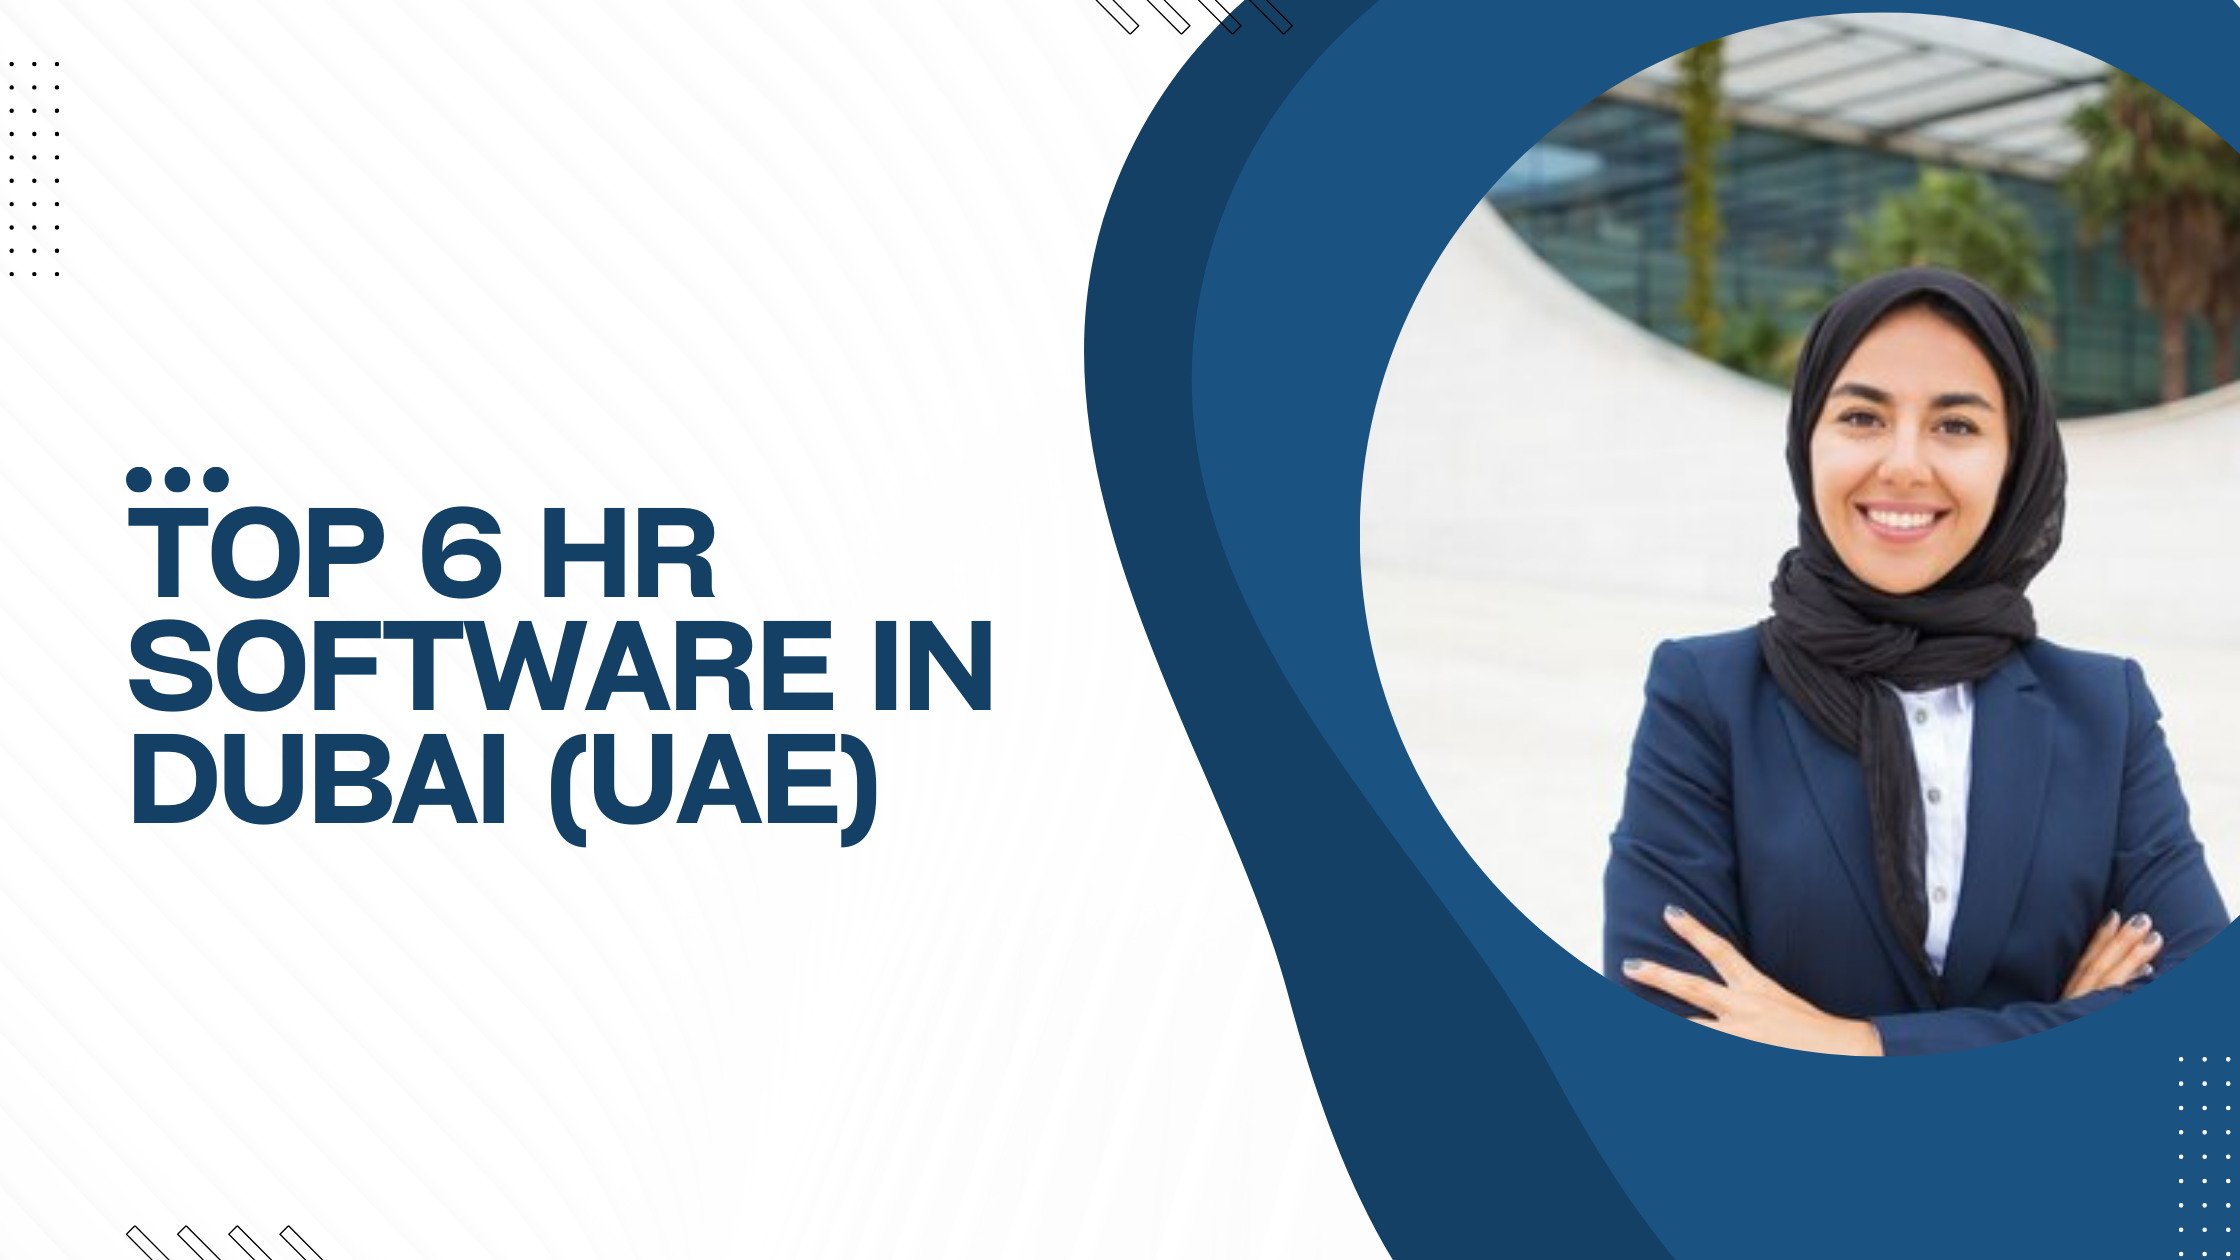 Top 6 HR Software In Dubai (UAE)